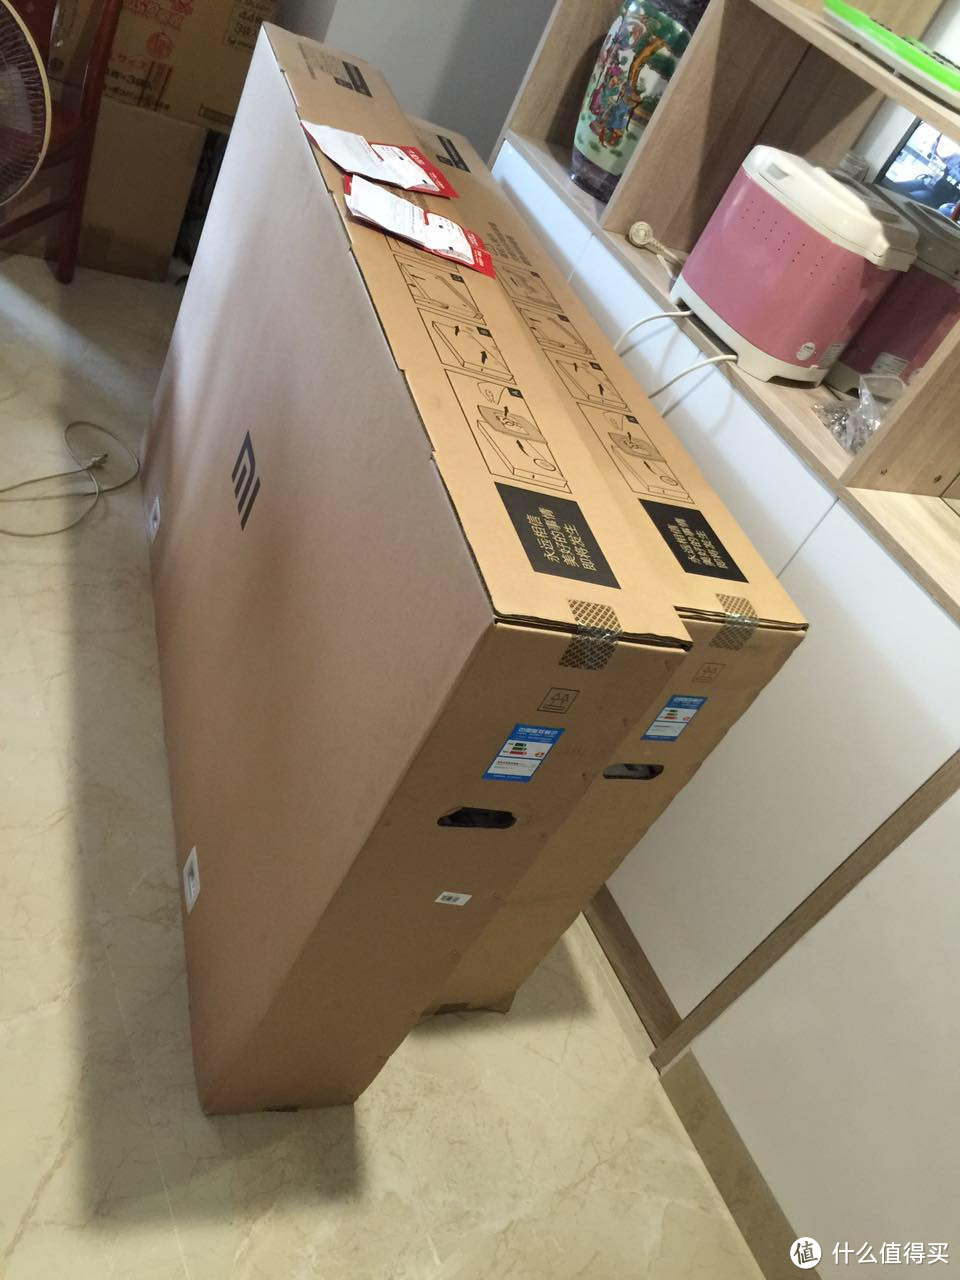 MI 小米 小米电视3 60英寸 4K液晶电视 开箱和挂架推荐及安装